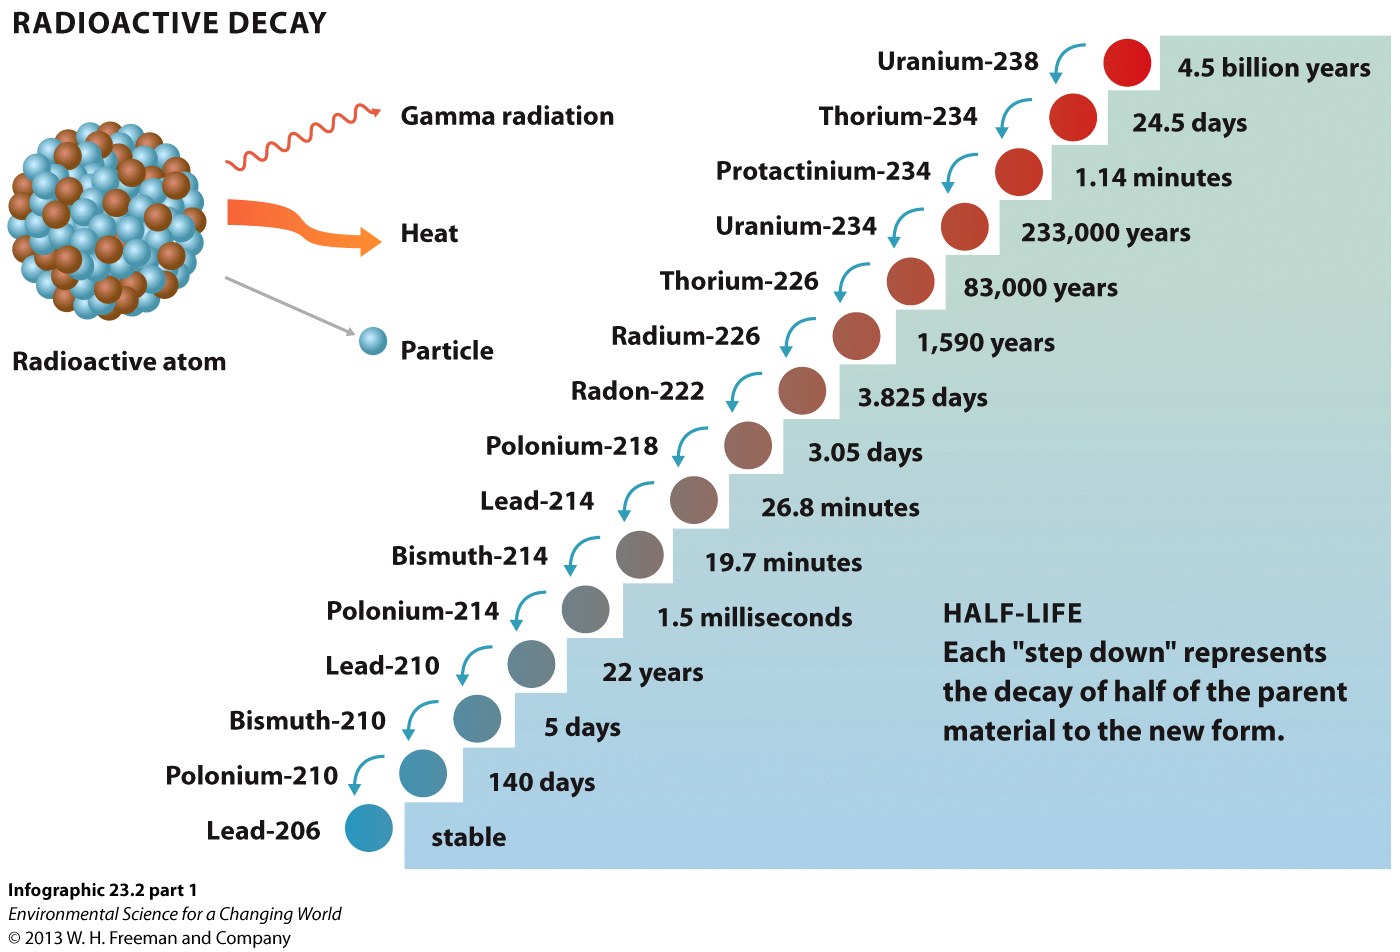 Infographic 23.2: Radioactive Decay